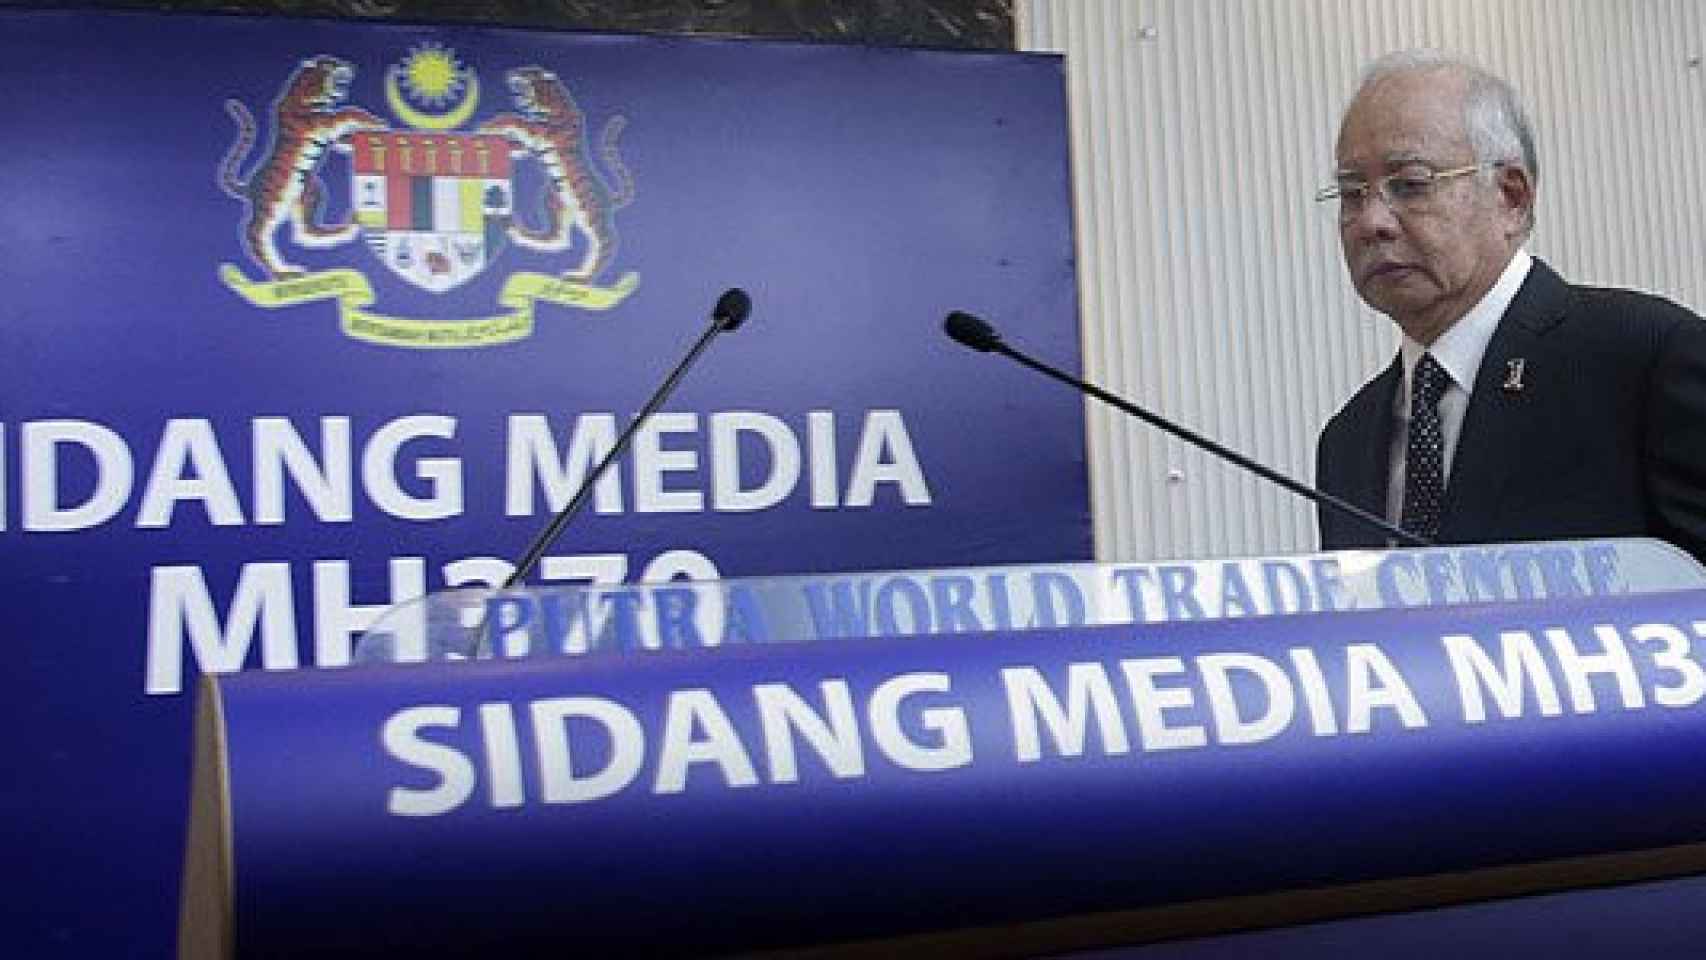 El primer ministro de Malasia, Najib Razak, al comienzo de la rueda de prensa celebrada en Kuala Lumpur